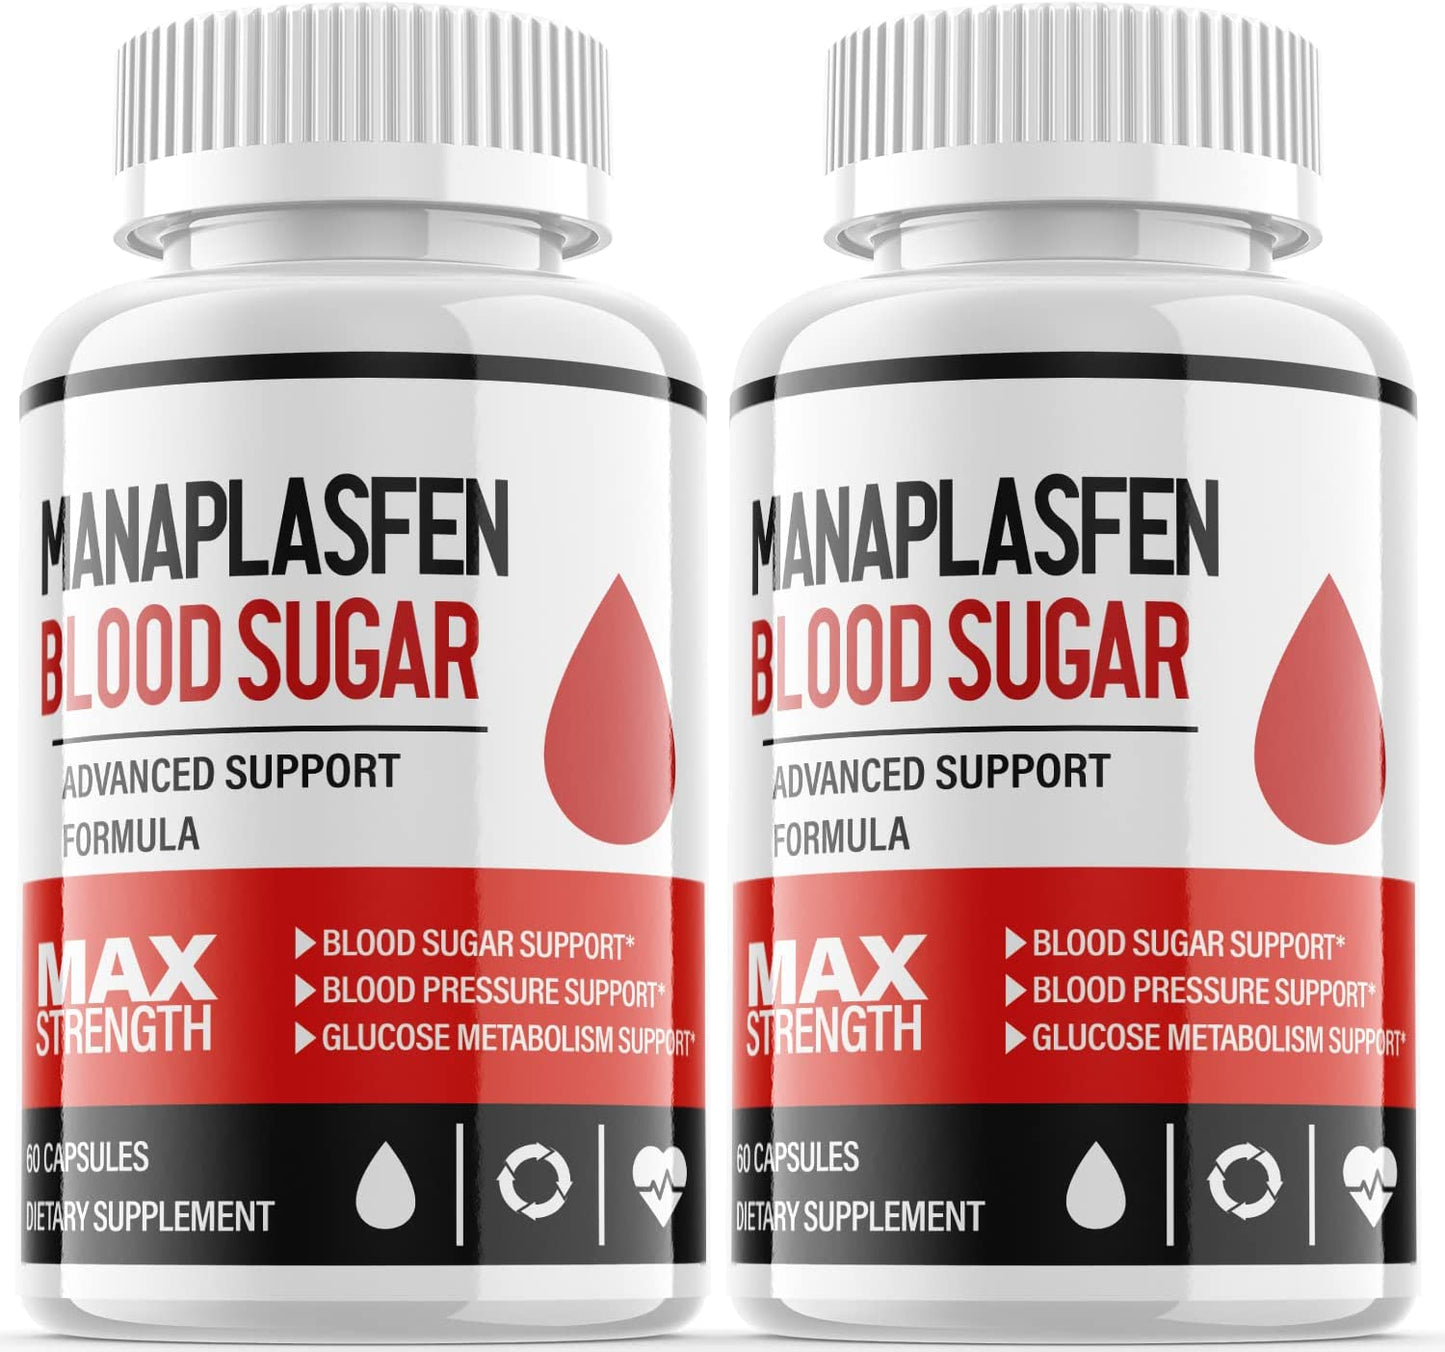 Manaplasfen Blood Sugar Pills